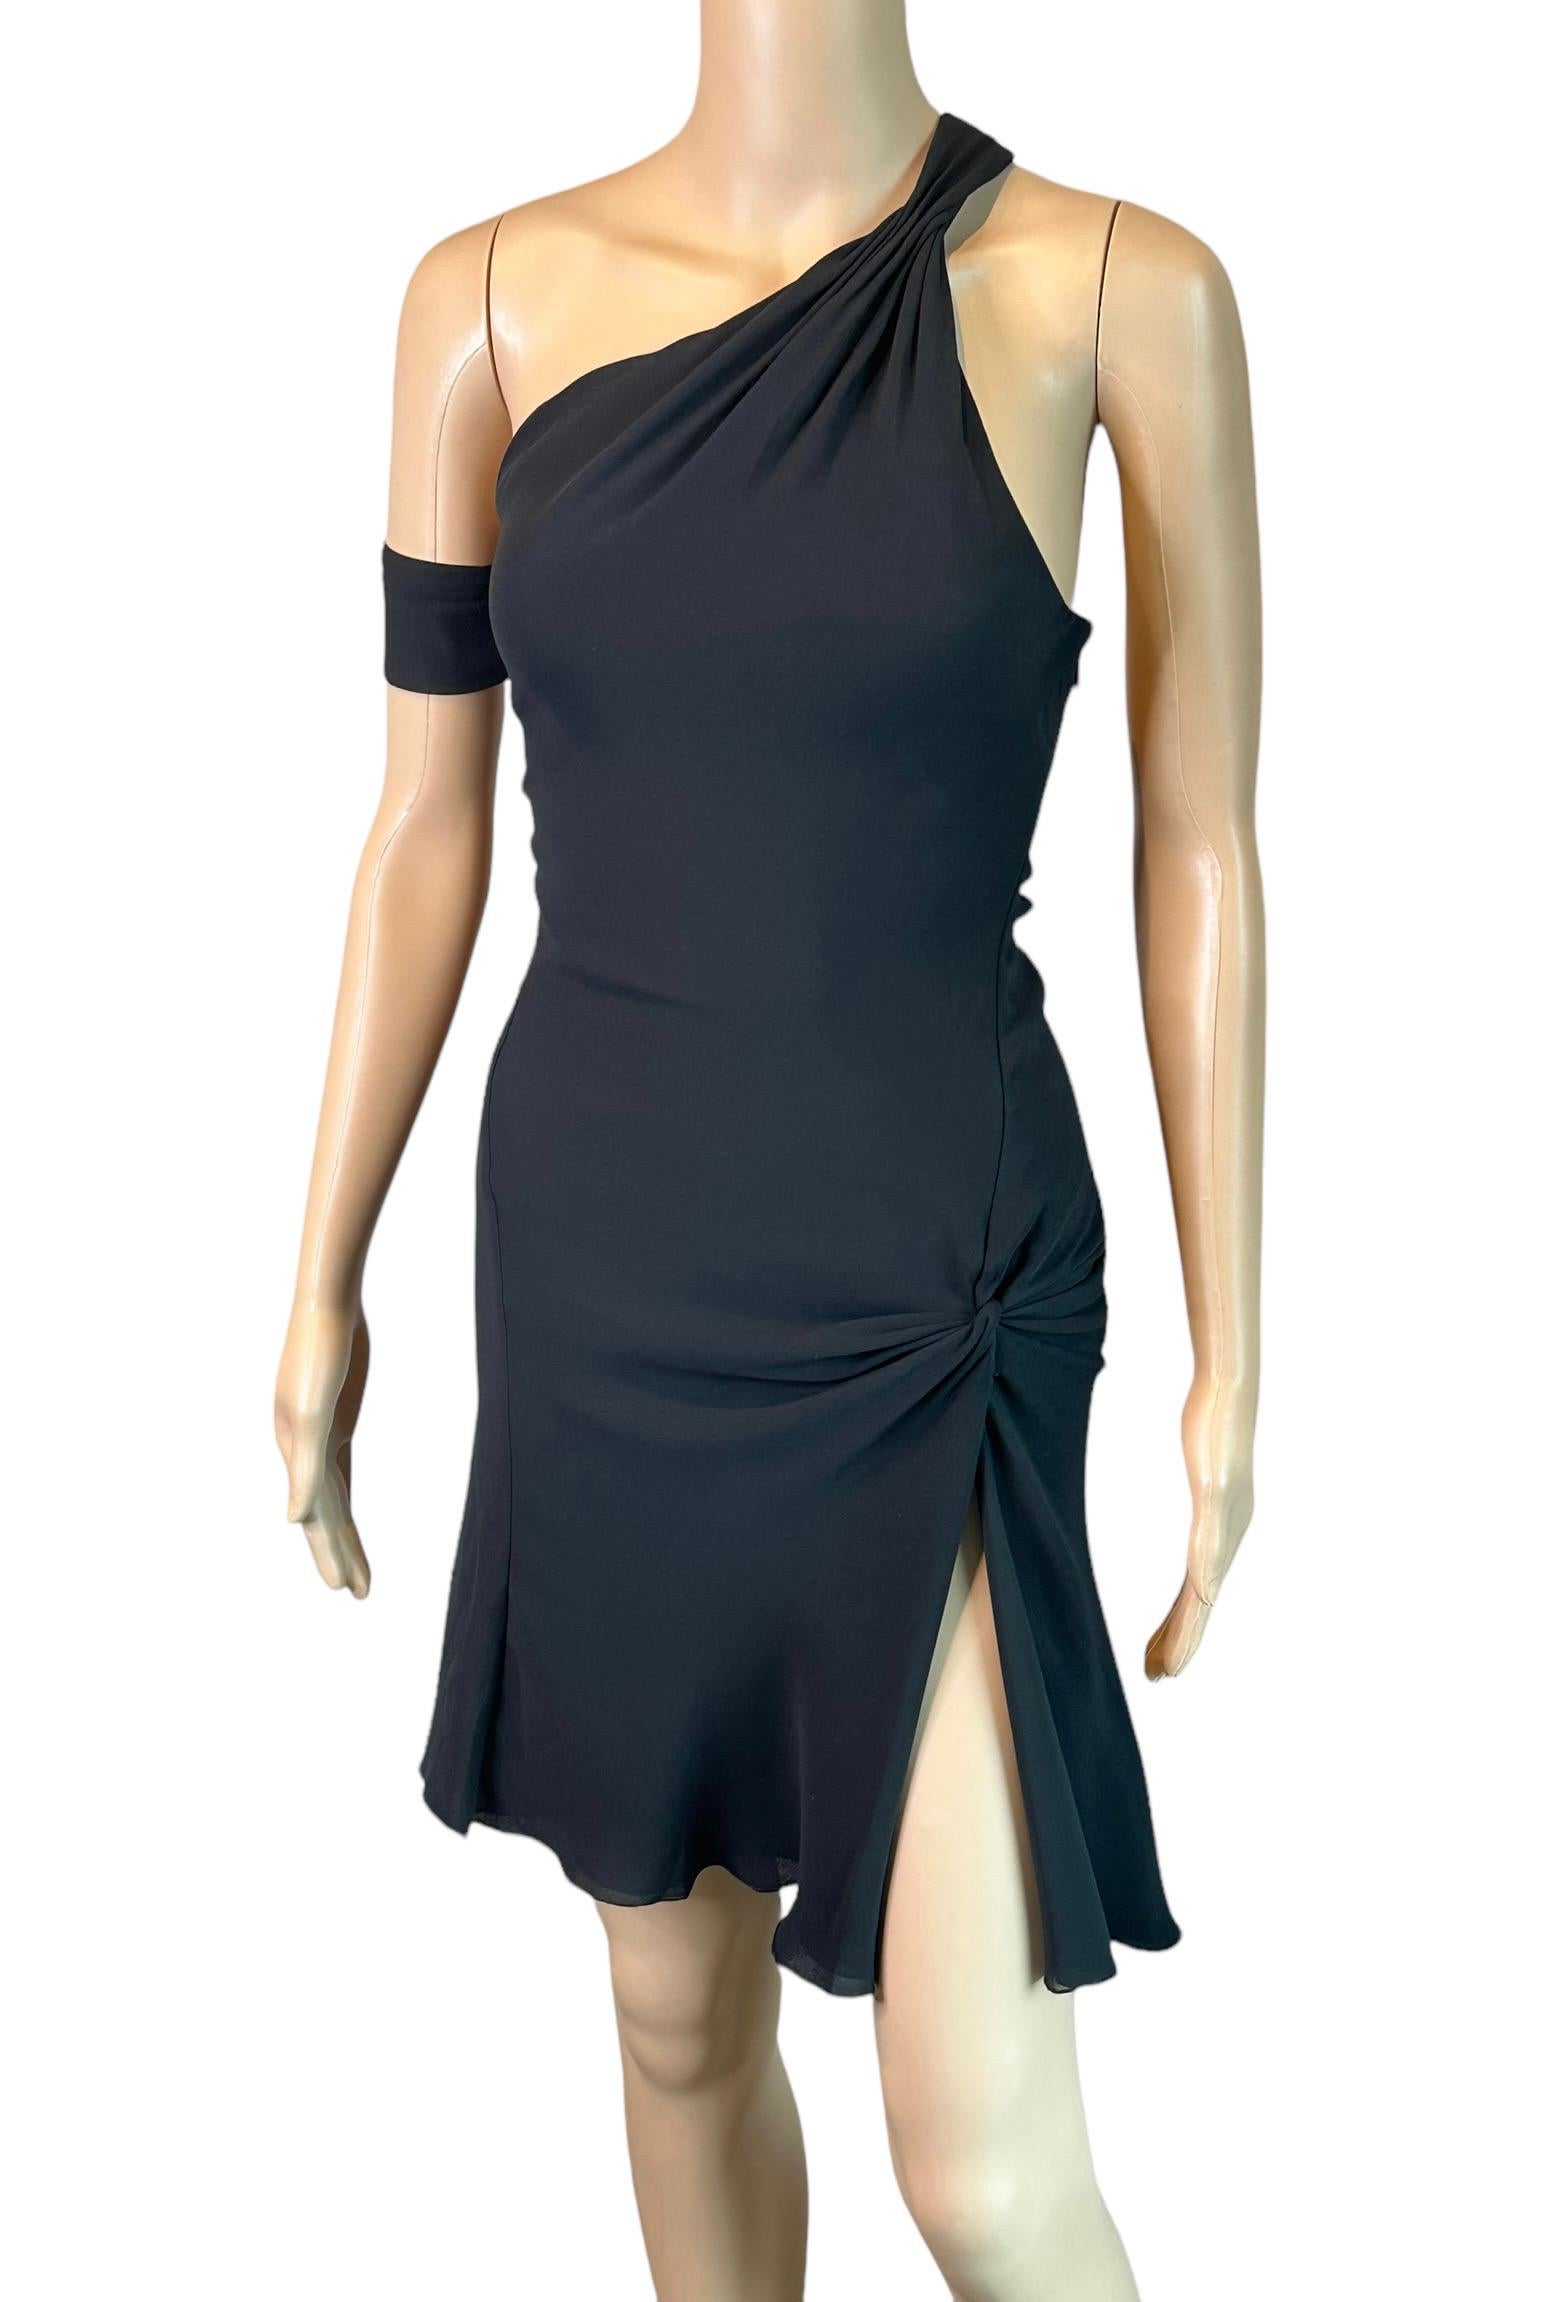 Gianni Versace F/W 2002 Laufsteg Ein-Schulter-Kleid mit hohem Schlitz aus schwarzer Seide Mini-Kleid IT 40

Look 42 aus der Fall 2002 Collection'S (in neongelber Farbe)

FOLGEN SIE UNS AUF INSTAGRAM @OPULENTADDICT